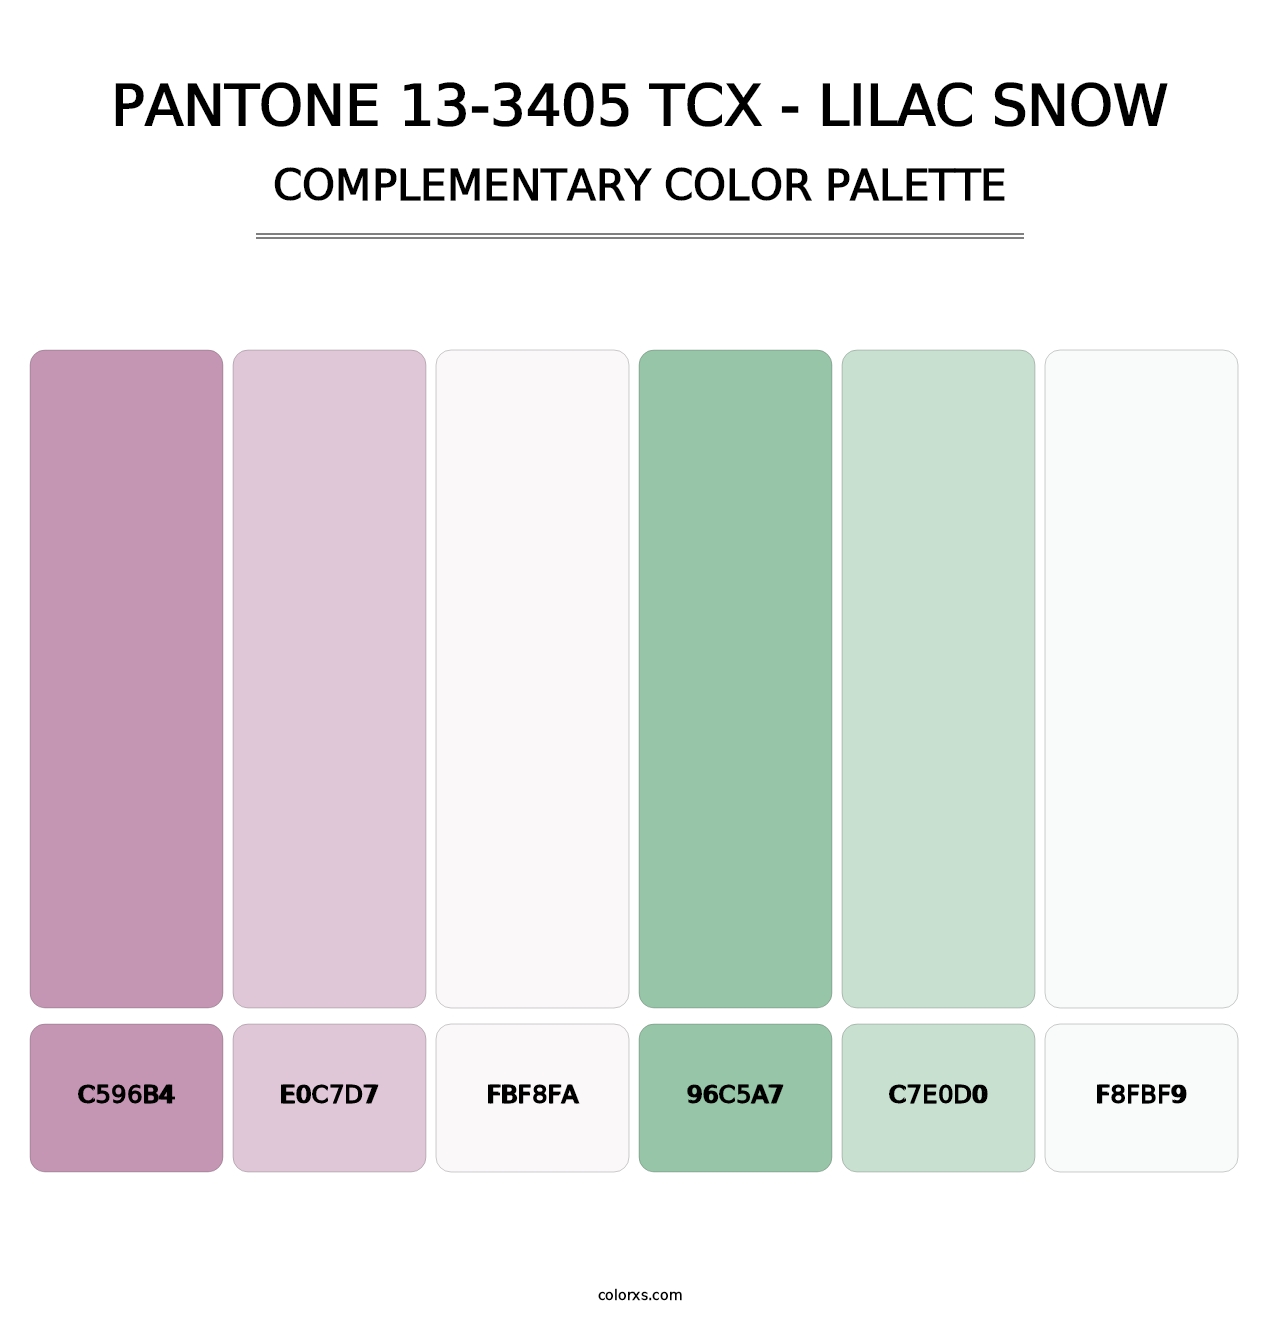 PANTONE 13-3405 TCX - Lilac Snow - Complementary Color Palette